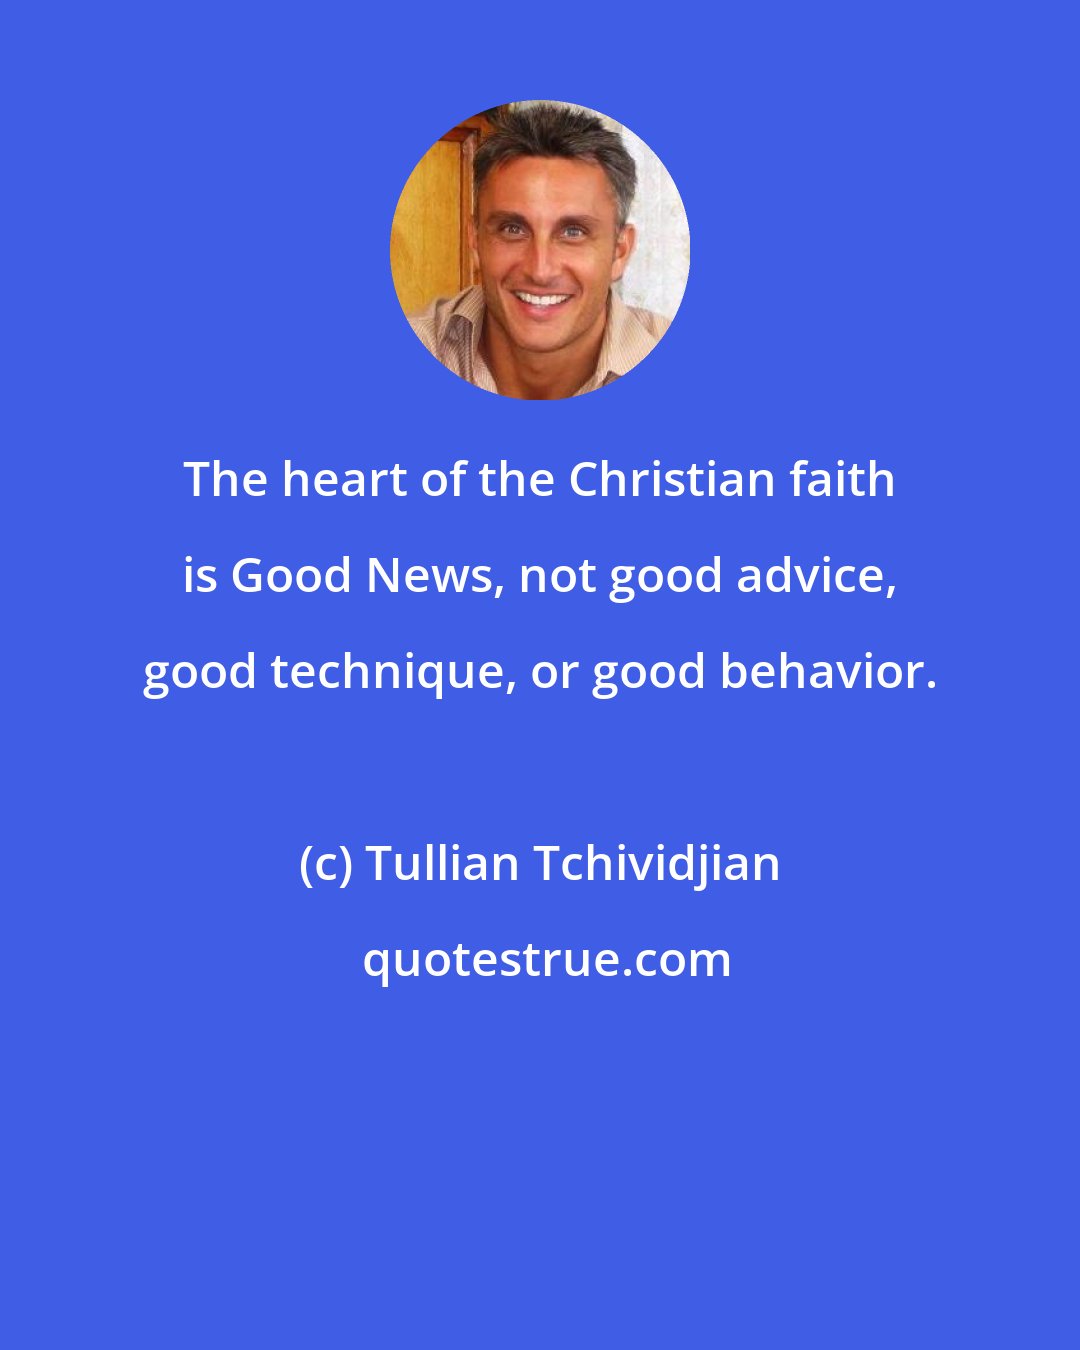 Tullian Tchividjian: The heart of the Christian faith is Good News, not good advice, good technique, or good behavior.